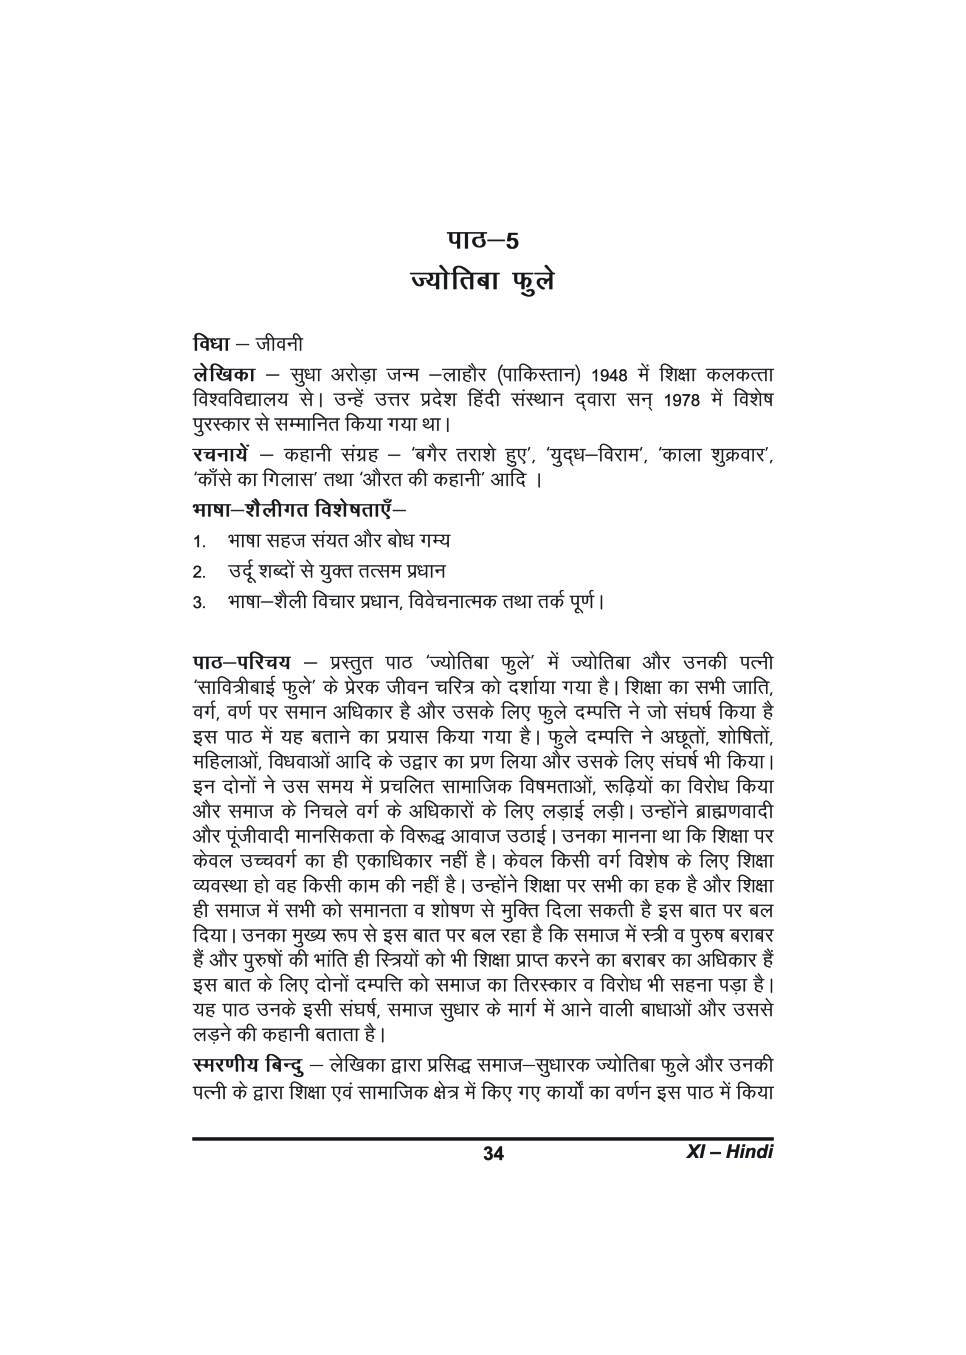 कक्षा 11 हिंदी के नोट्स - ज्योतिबा फुले - Page 1